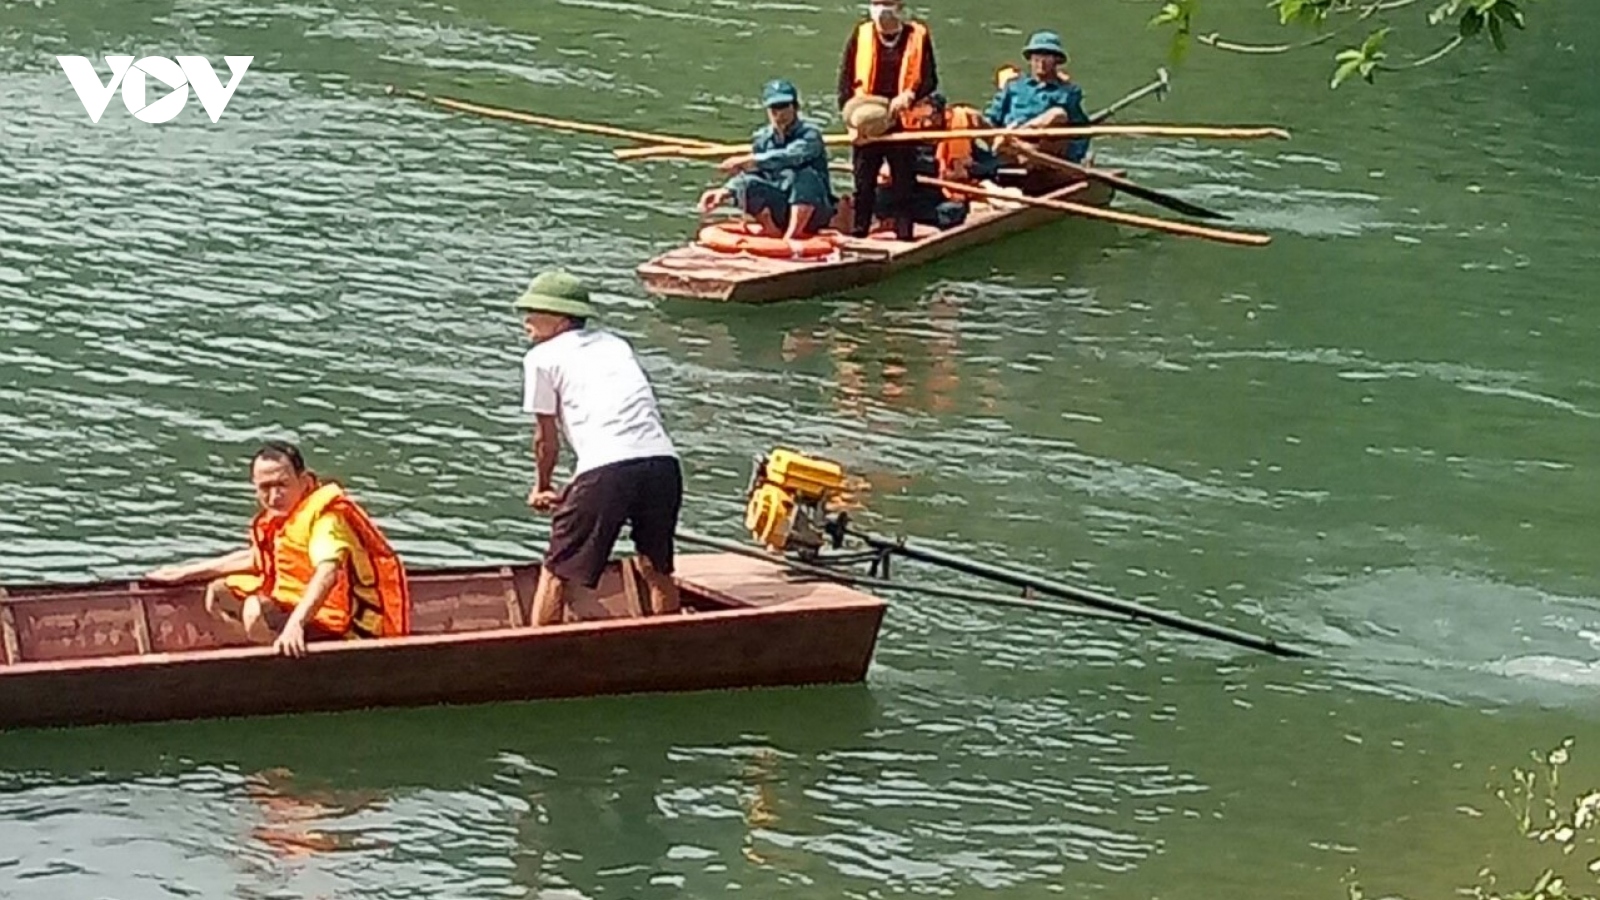 Lật thuyền trên sông Chảy khiến 1 người tử vong